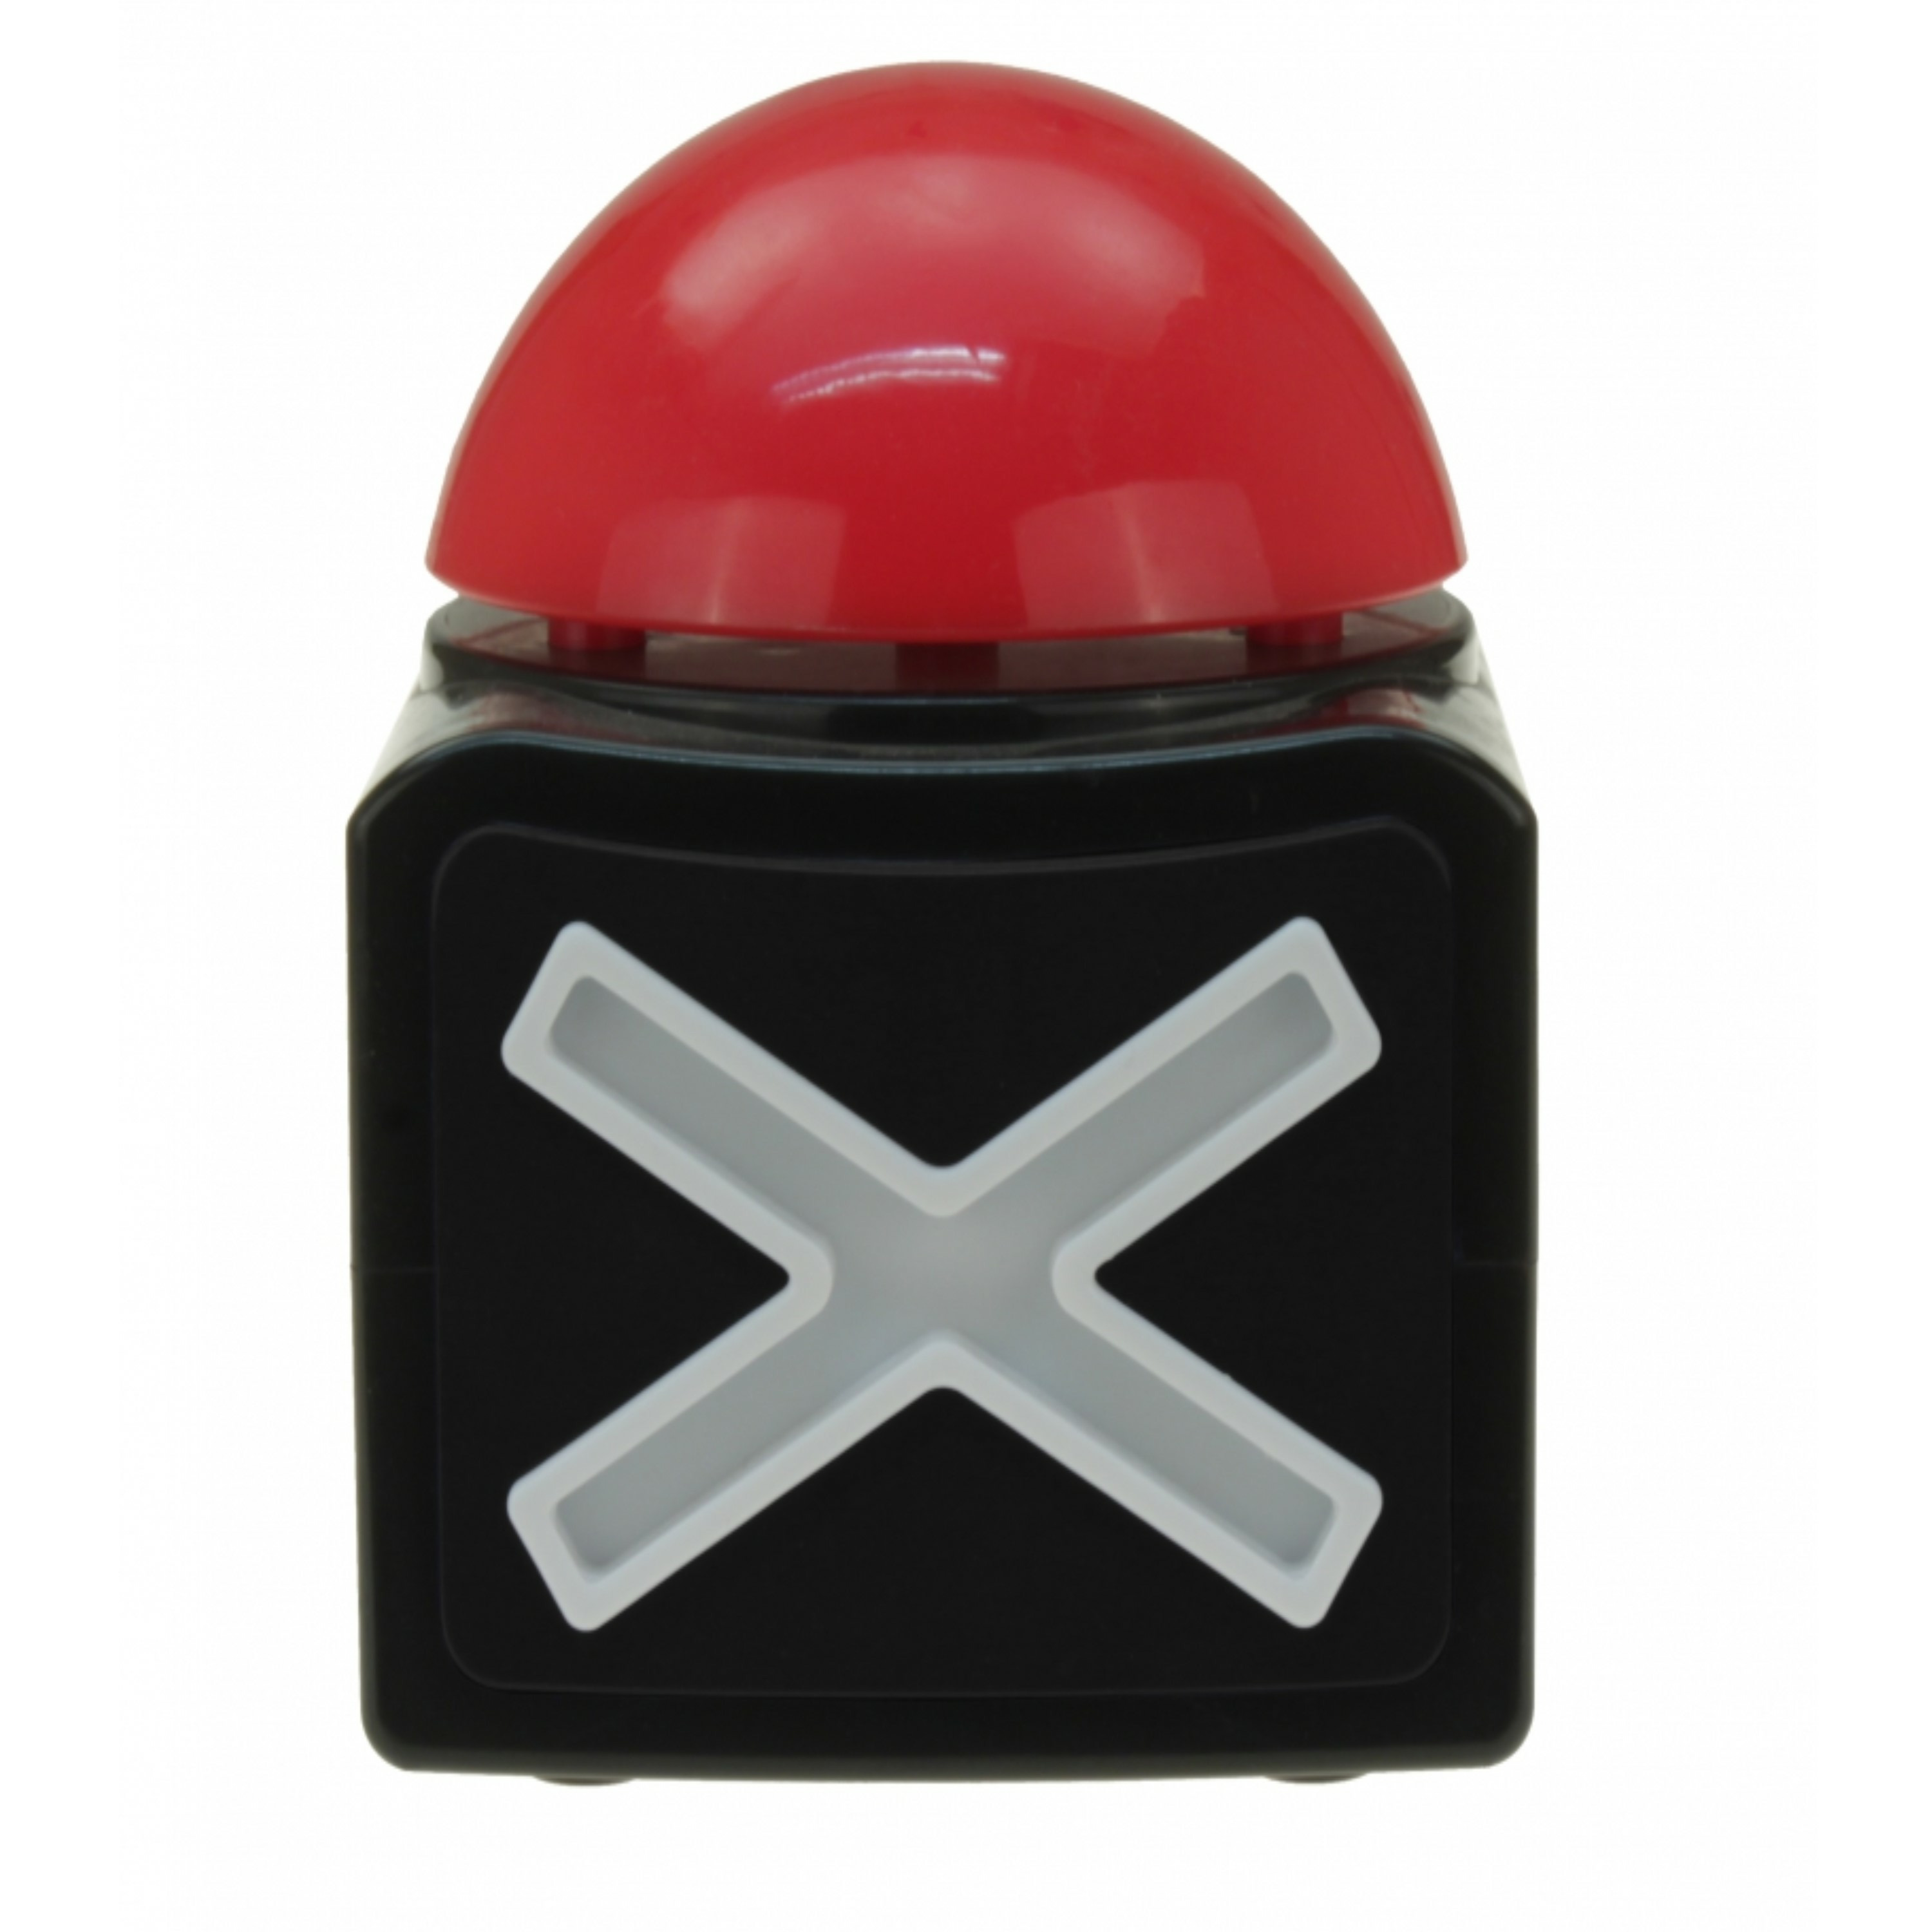 Quiz buzzer button met licht en geluid 11 cm